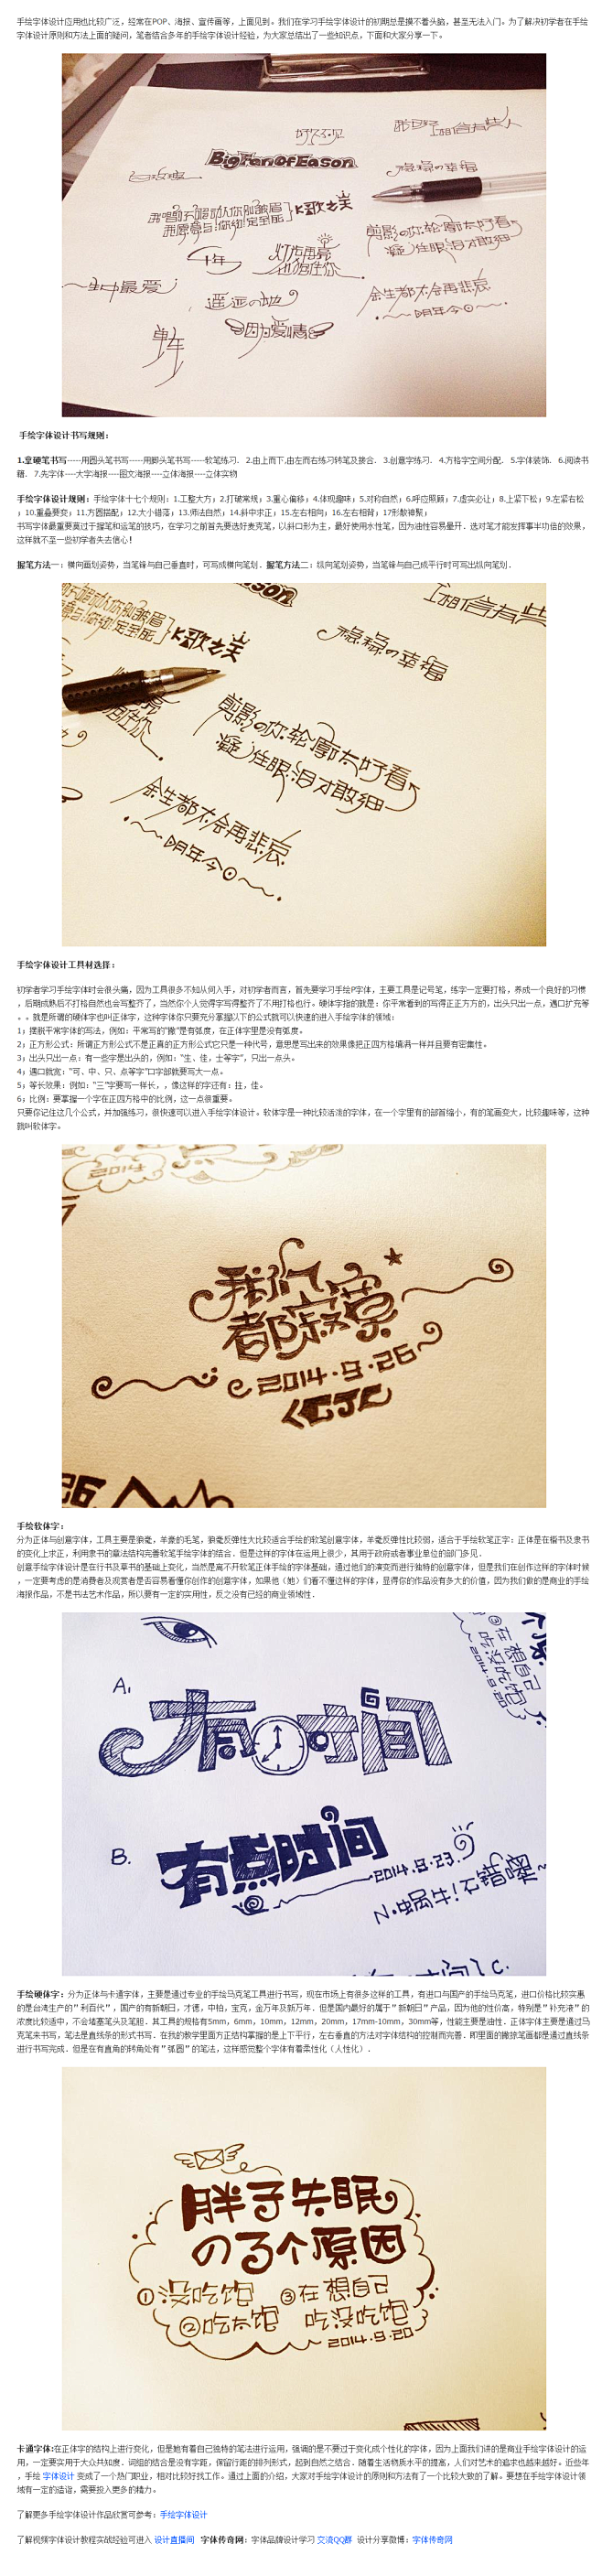 手绘字体设计的方法介绍_字体传奇网-中国...